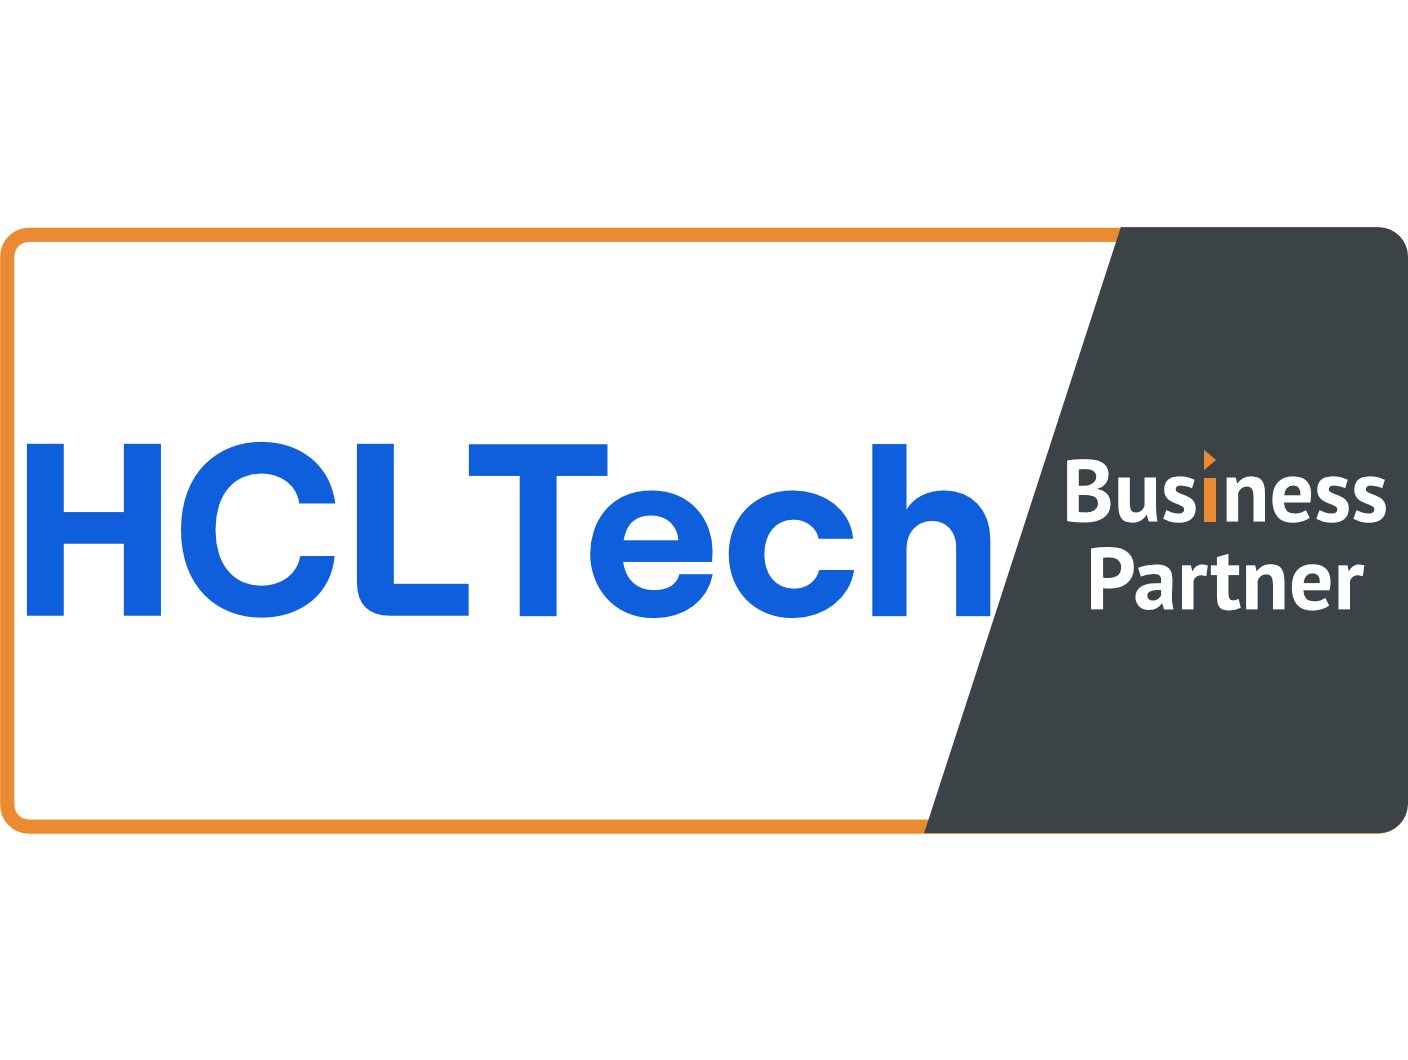 HCLTech - Business Partner